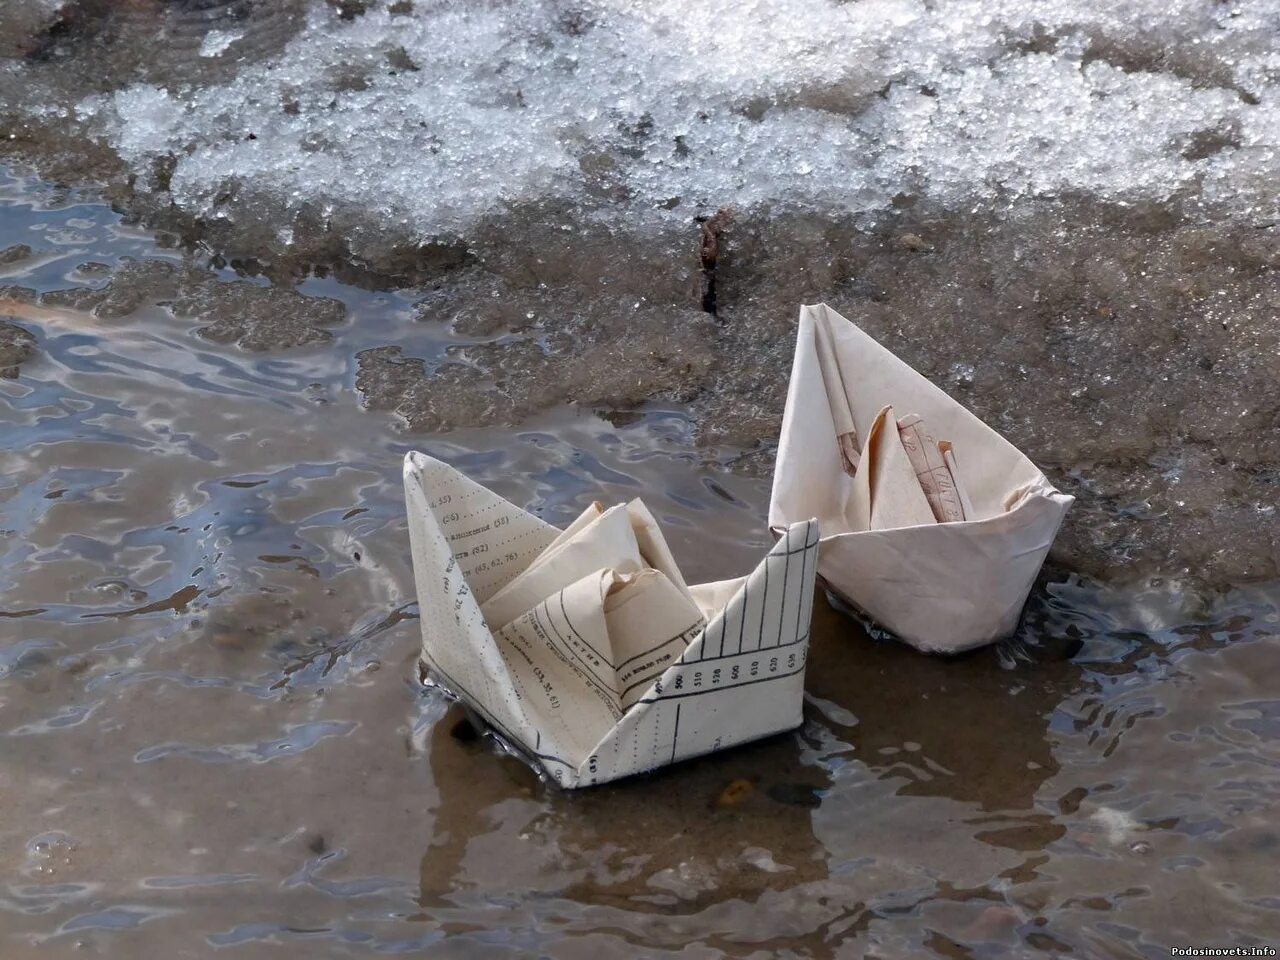 Кораблик из бумаги я по ручью пустил. Бумажный кораблик в ручейке. Бумажный кораблик в ручье. Весенние кораблики.